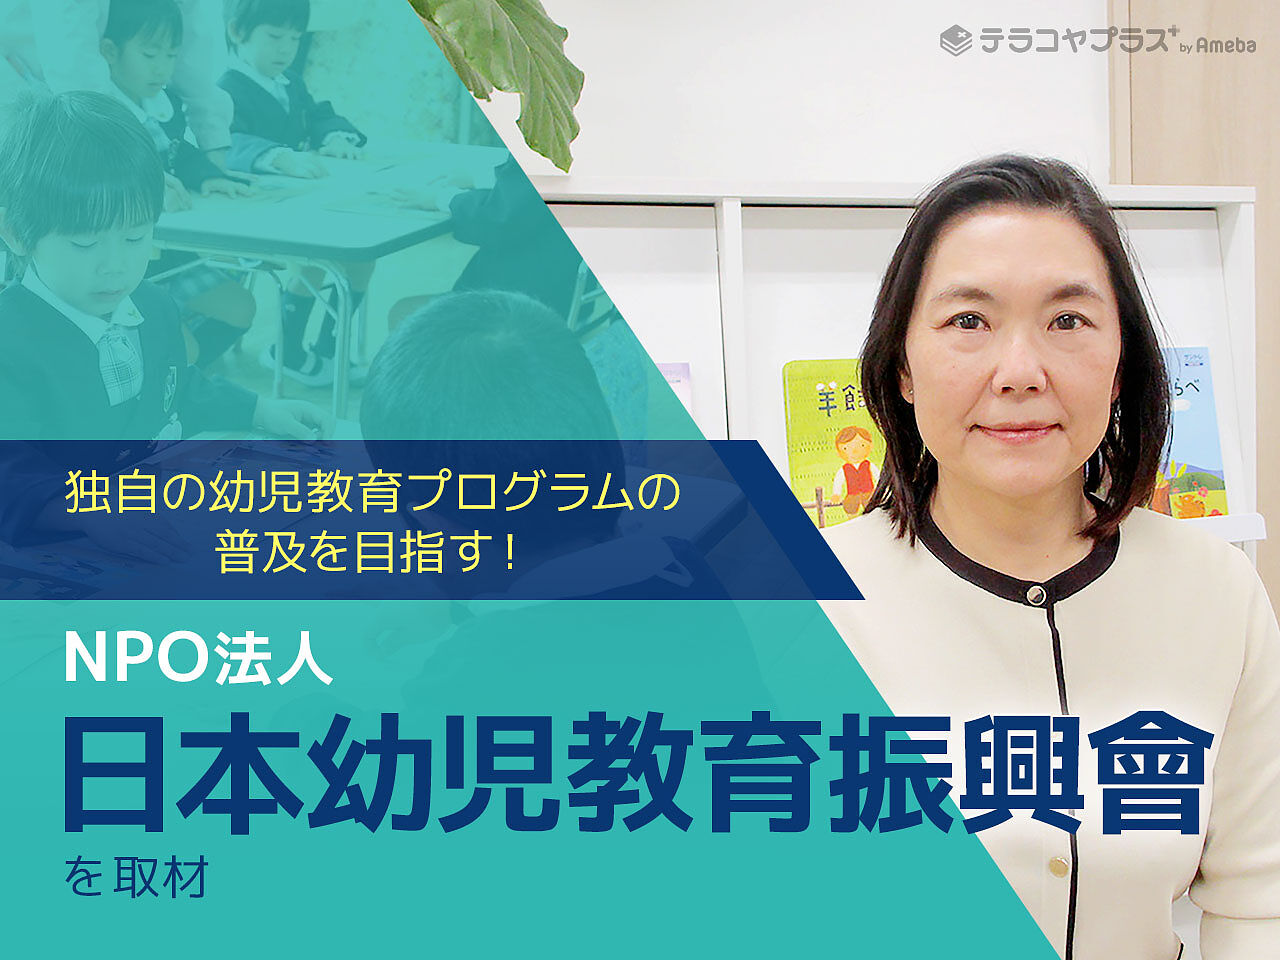 NPO法人「日本幼児教育振興會」が幼少期の子どもたちに対して取り組む“言葉の教育プログラム”とはの画像